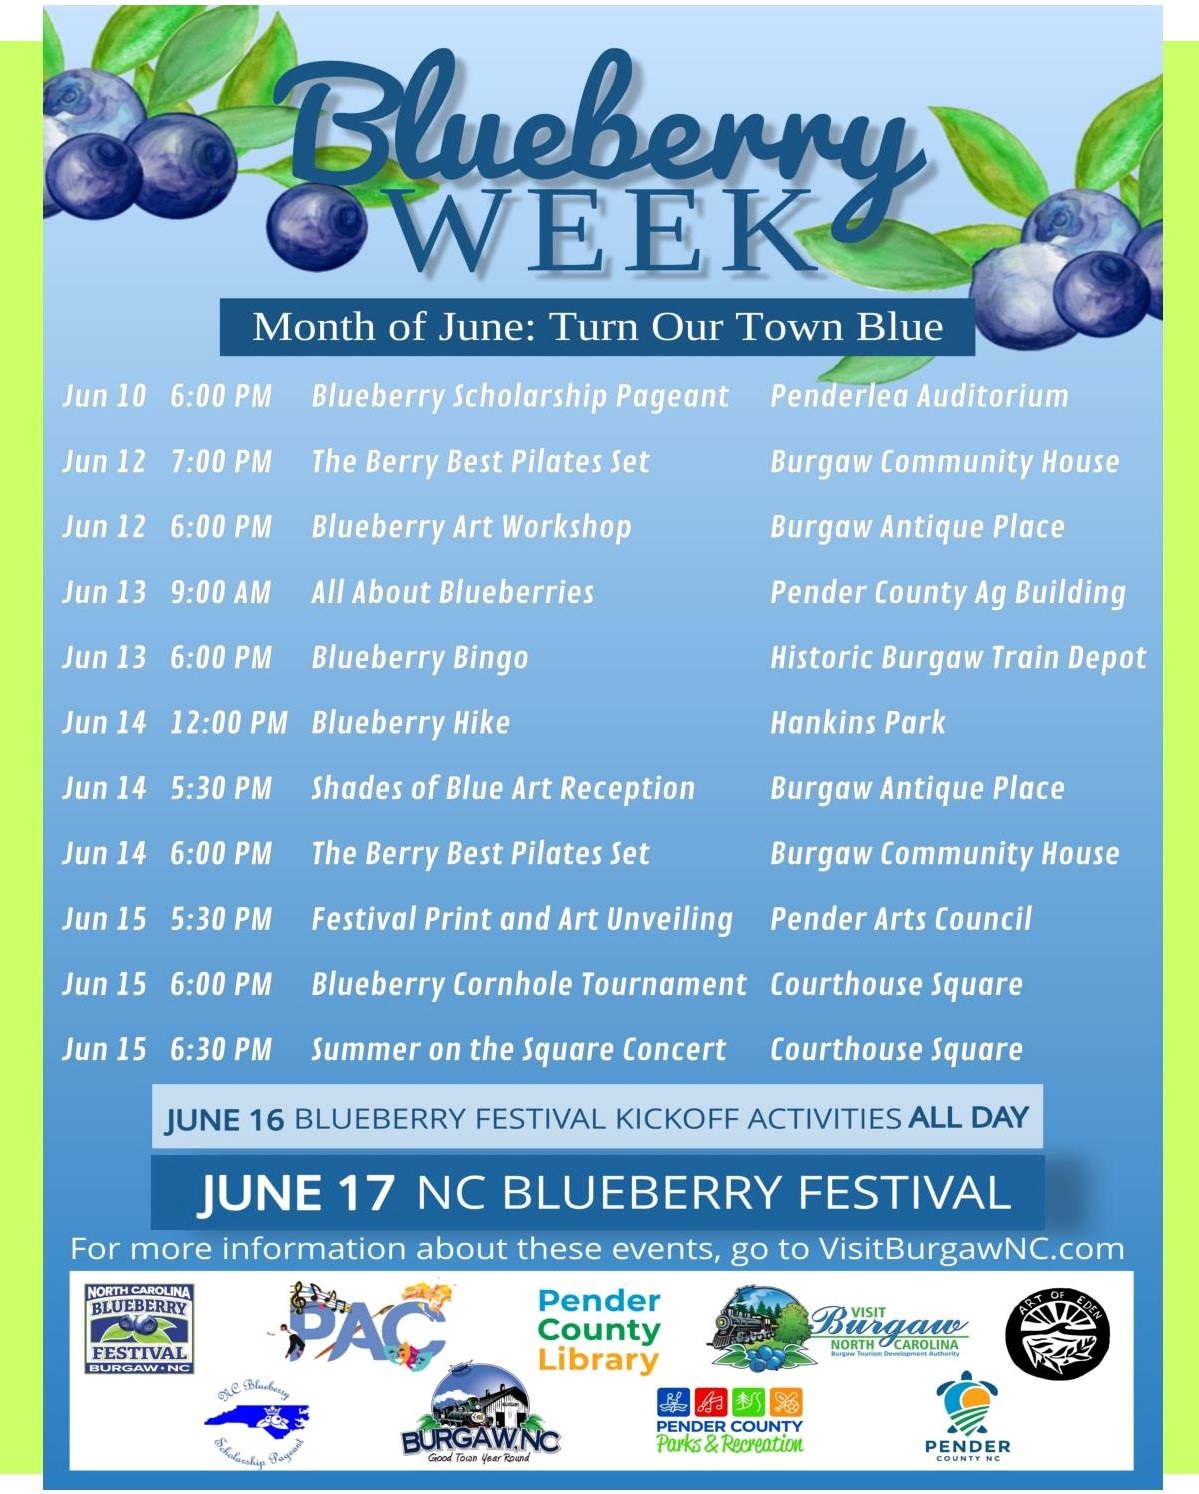 Blueberry Week in Burgaw, NC